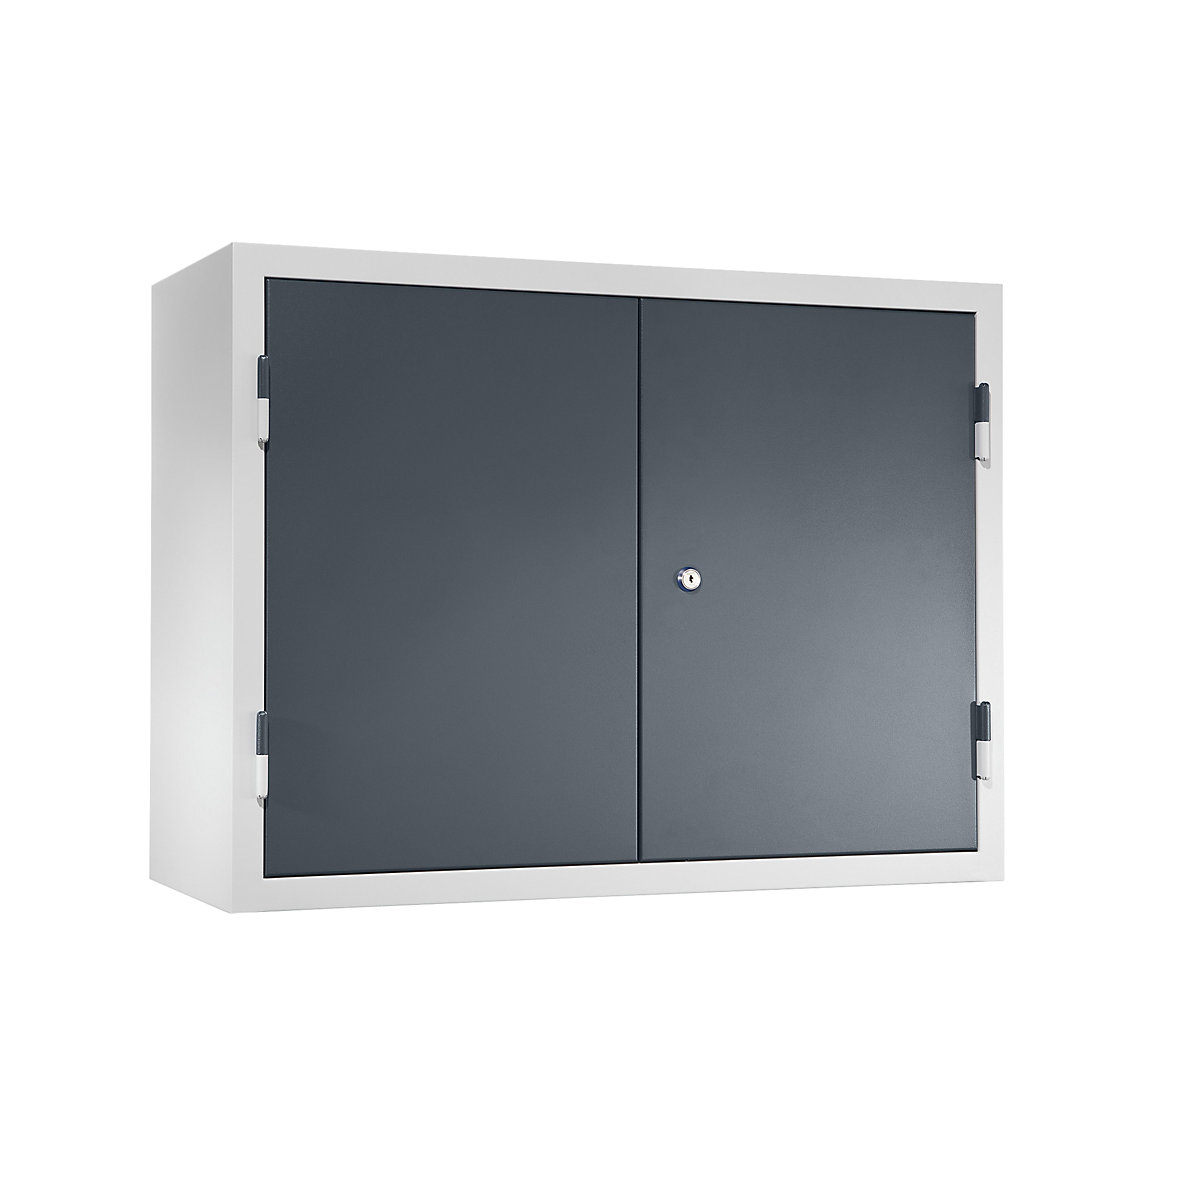 Dílenská závěsná skříň – eurokraft basic, v x š x h 600 x 800 x 320 mm, plné plechové dveře, čedičově šedá RAL 7012-13